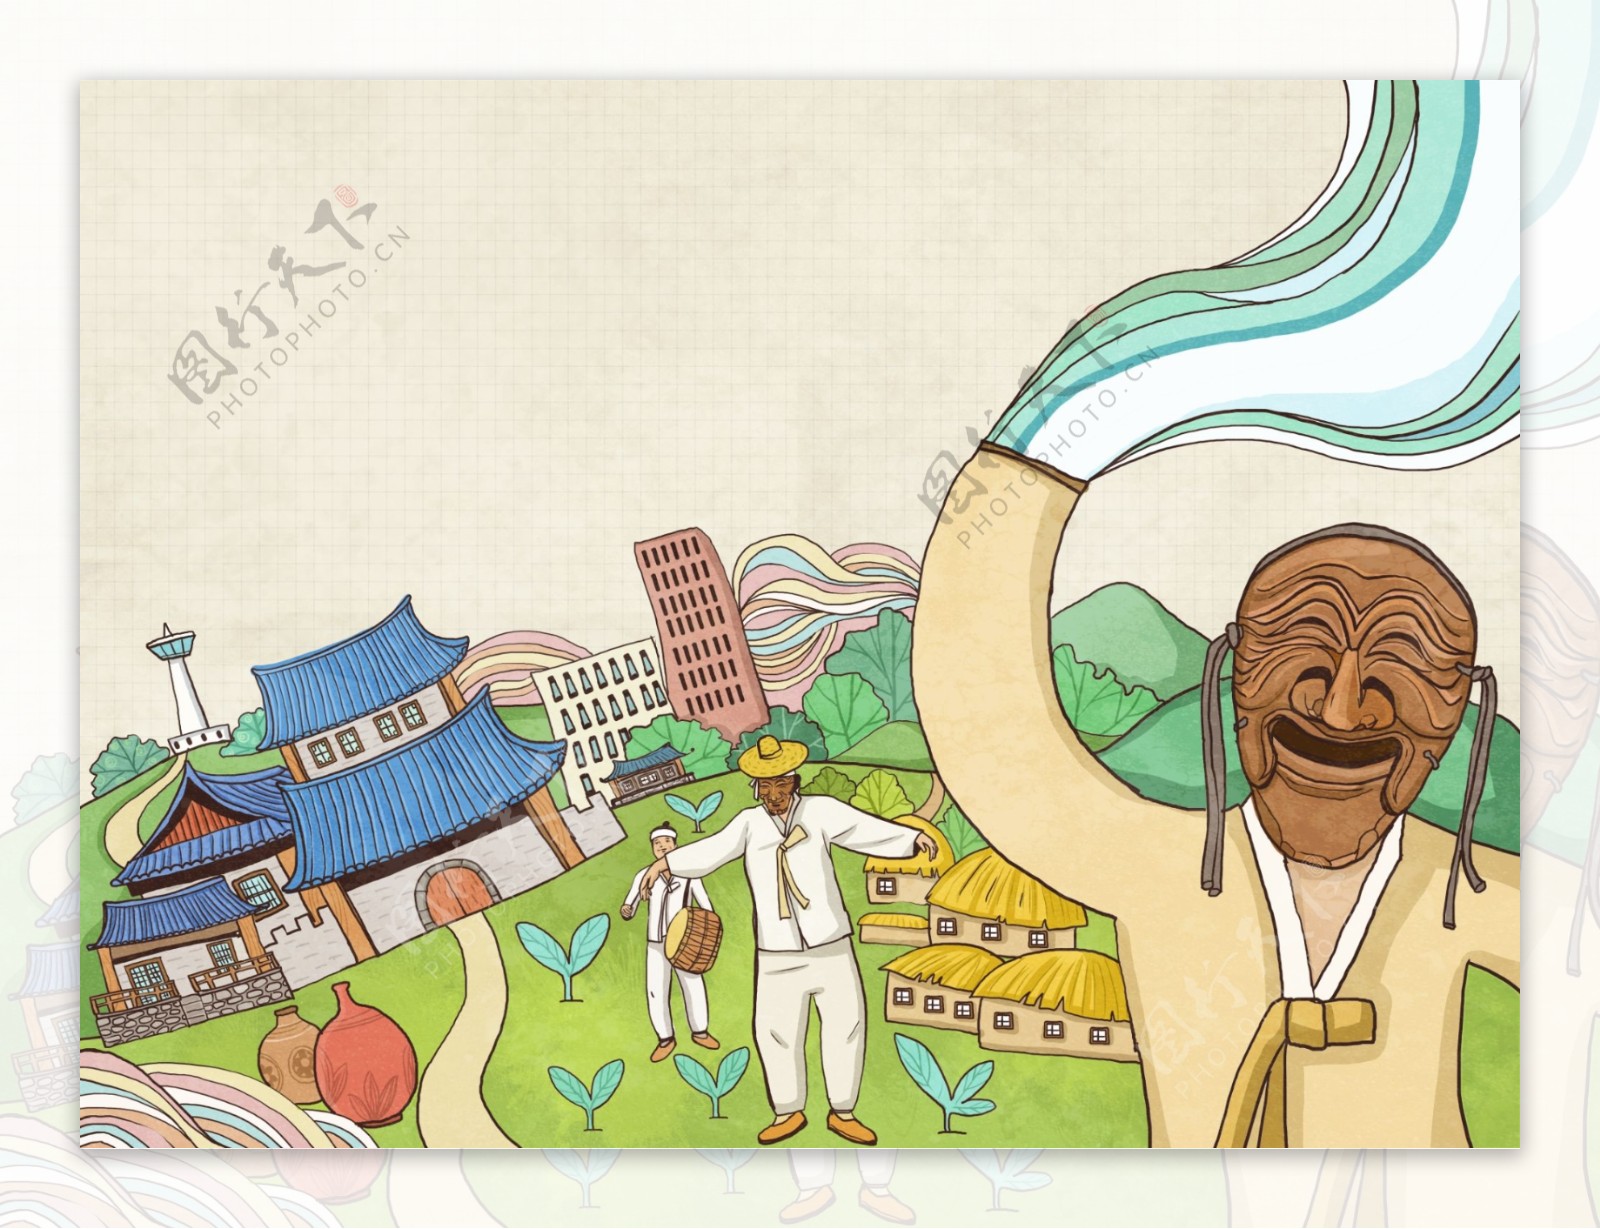 韩国首尔旅游手绘民俗欢乐素材